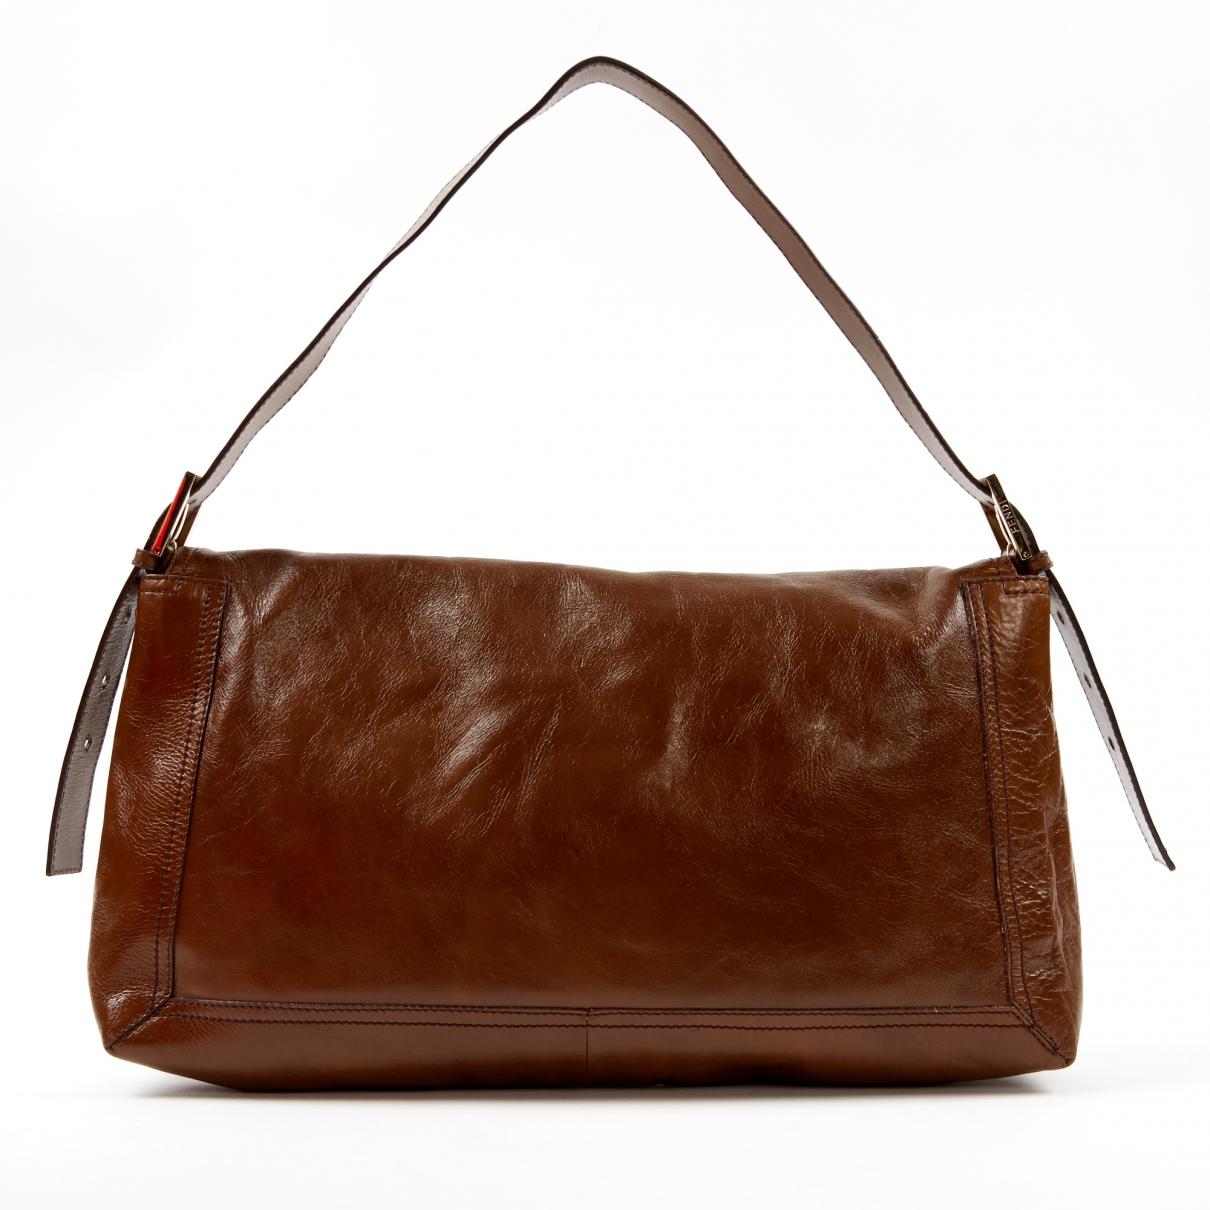 Fendi Pre-owned Brown Leather Handbags in Brown - Lyst